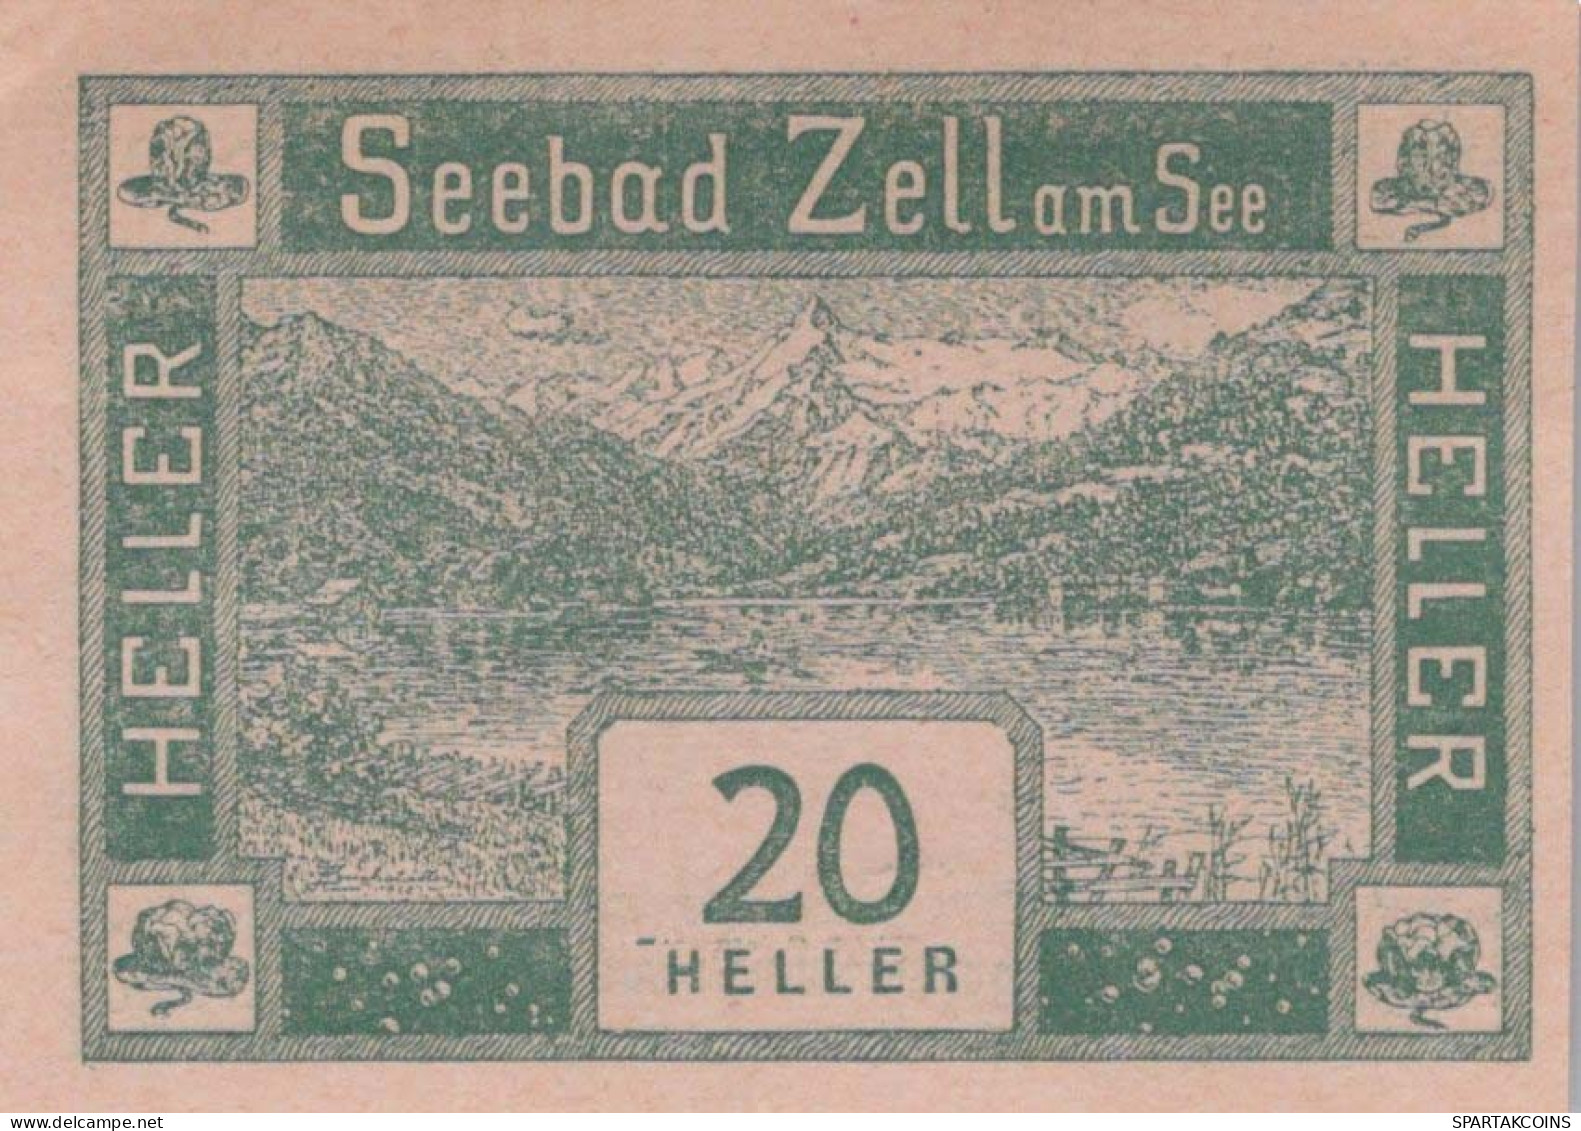 20 HELLER 1920 Stadt ZELL AM SEE Salzburg Österreich Notgeld Banknote #PE118 - [11] Local Banknote Issues